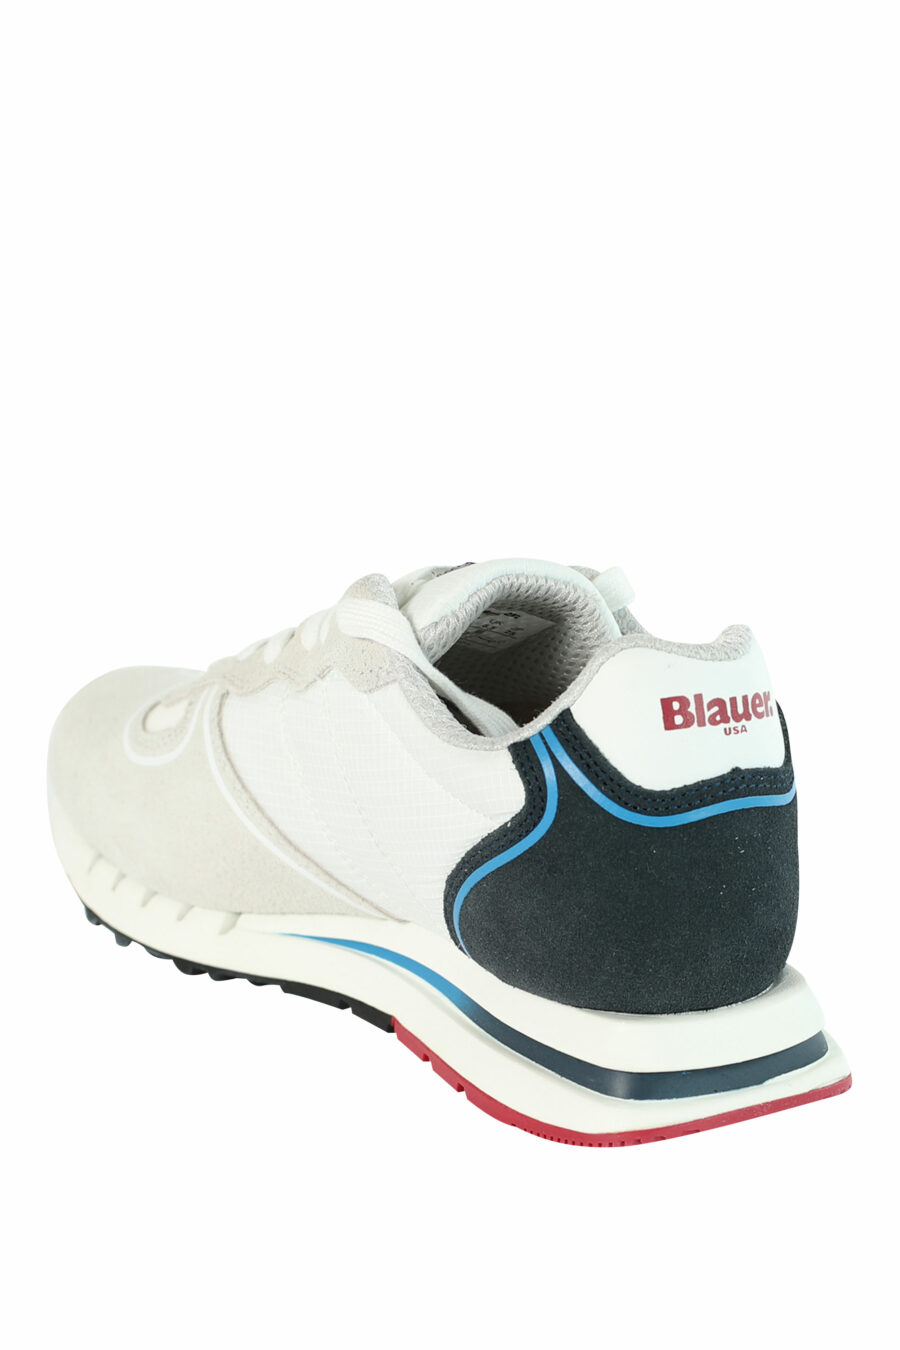 Baskets "QUARTZ" blanches avec détails bleus et rouges - 8058156499522 4